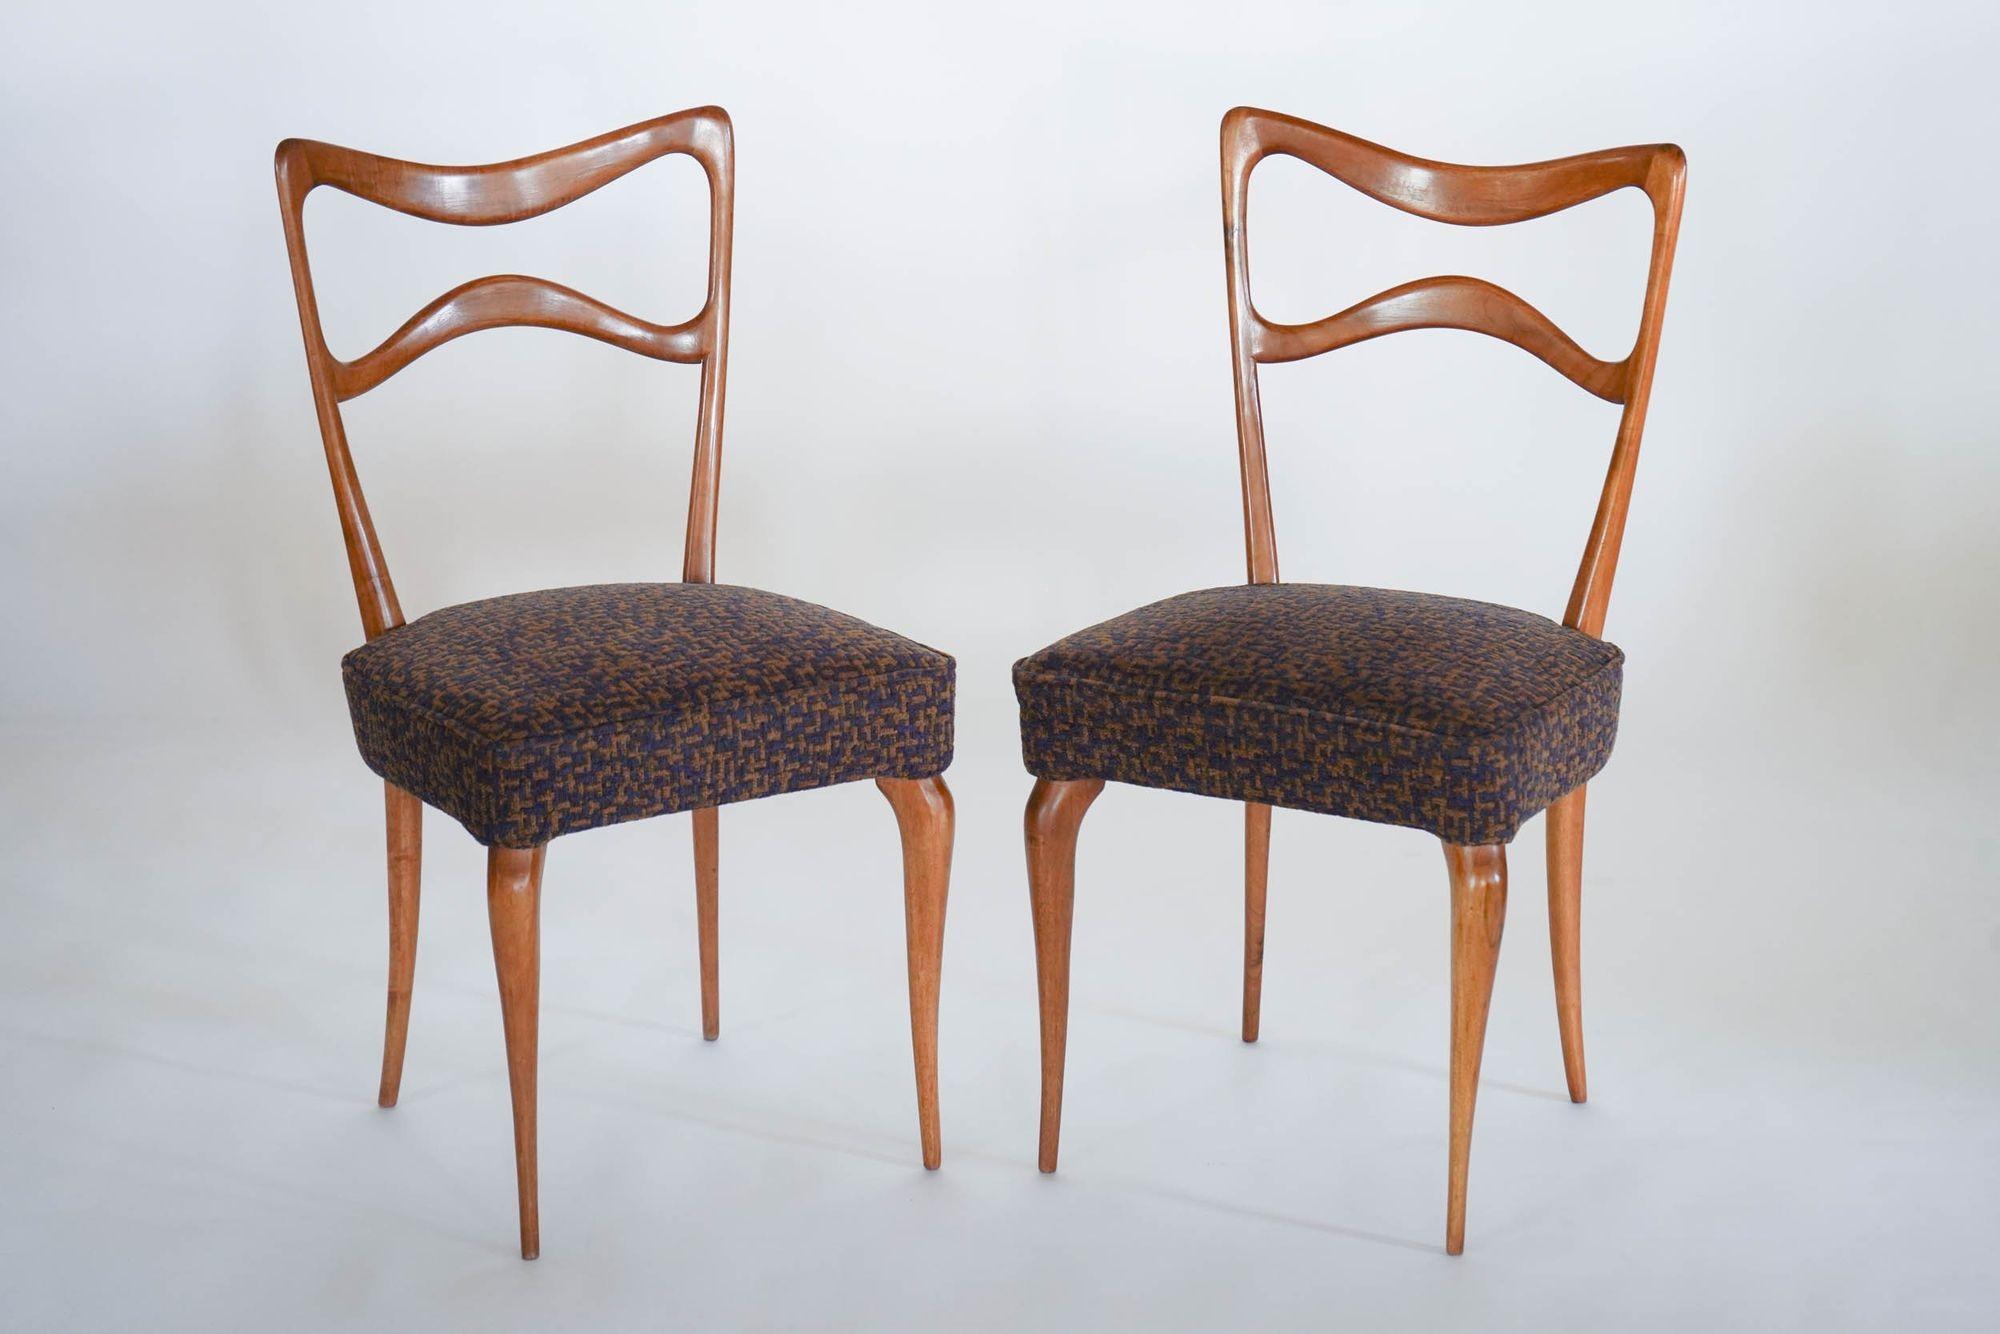 Wir stellen den Armonia Stuhl vor.

Dieses Set aus 8 italienischen Nussbaumstühlen ist ein einzigartiges und zeitloses Esszimmerstuhl-Set.
Die Stühle sind aus massivem italienischem Walnussholz gefertigt, das für seine Stärke und Schönheit bekannt